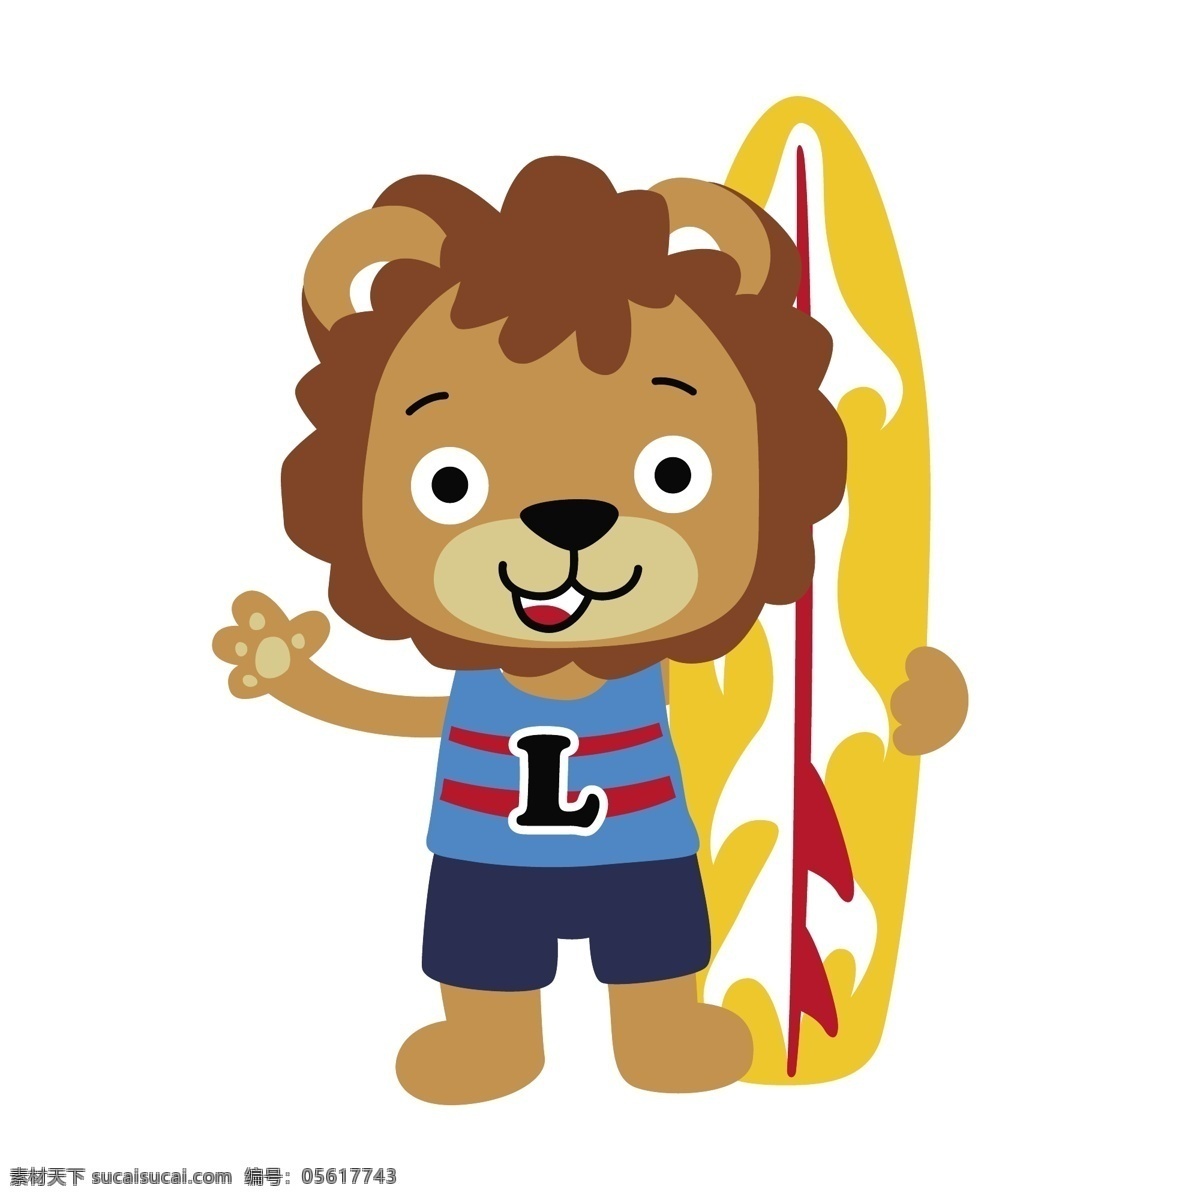 玩 滑板 狮子 矢量 小狮子 卡通 卡通狮子 可爱 可爱小狮子 滑板运动 体育 体育运动